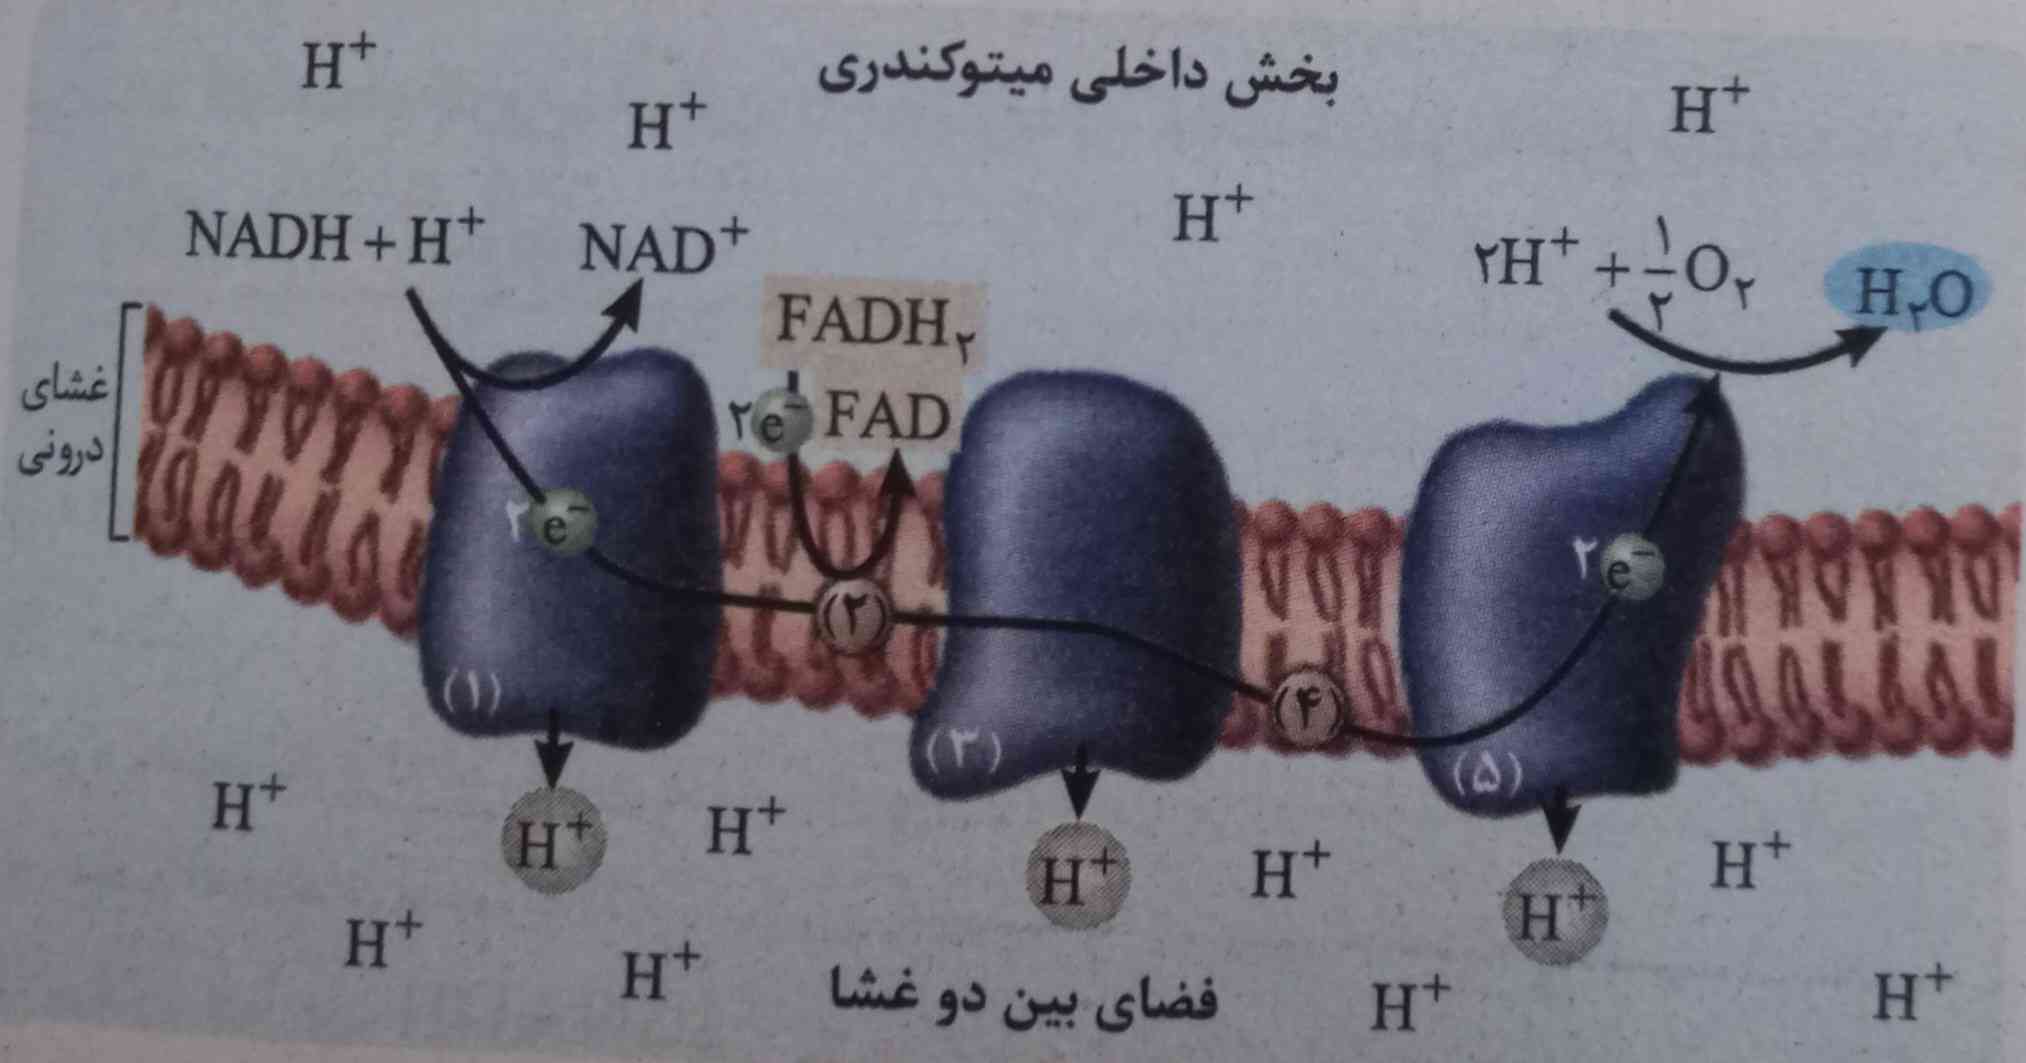 چجوری با وجود اینکه ۲ الکترون هم از FADH2 دریافت می‌کنه پمپ آخری ۲ الکترون داره؟ آخه پمپ اول قبل از دریافت دو الکترون از FADH2 هم دو الکترون داشت؟